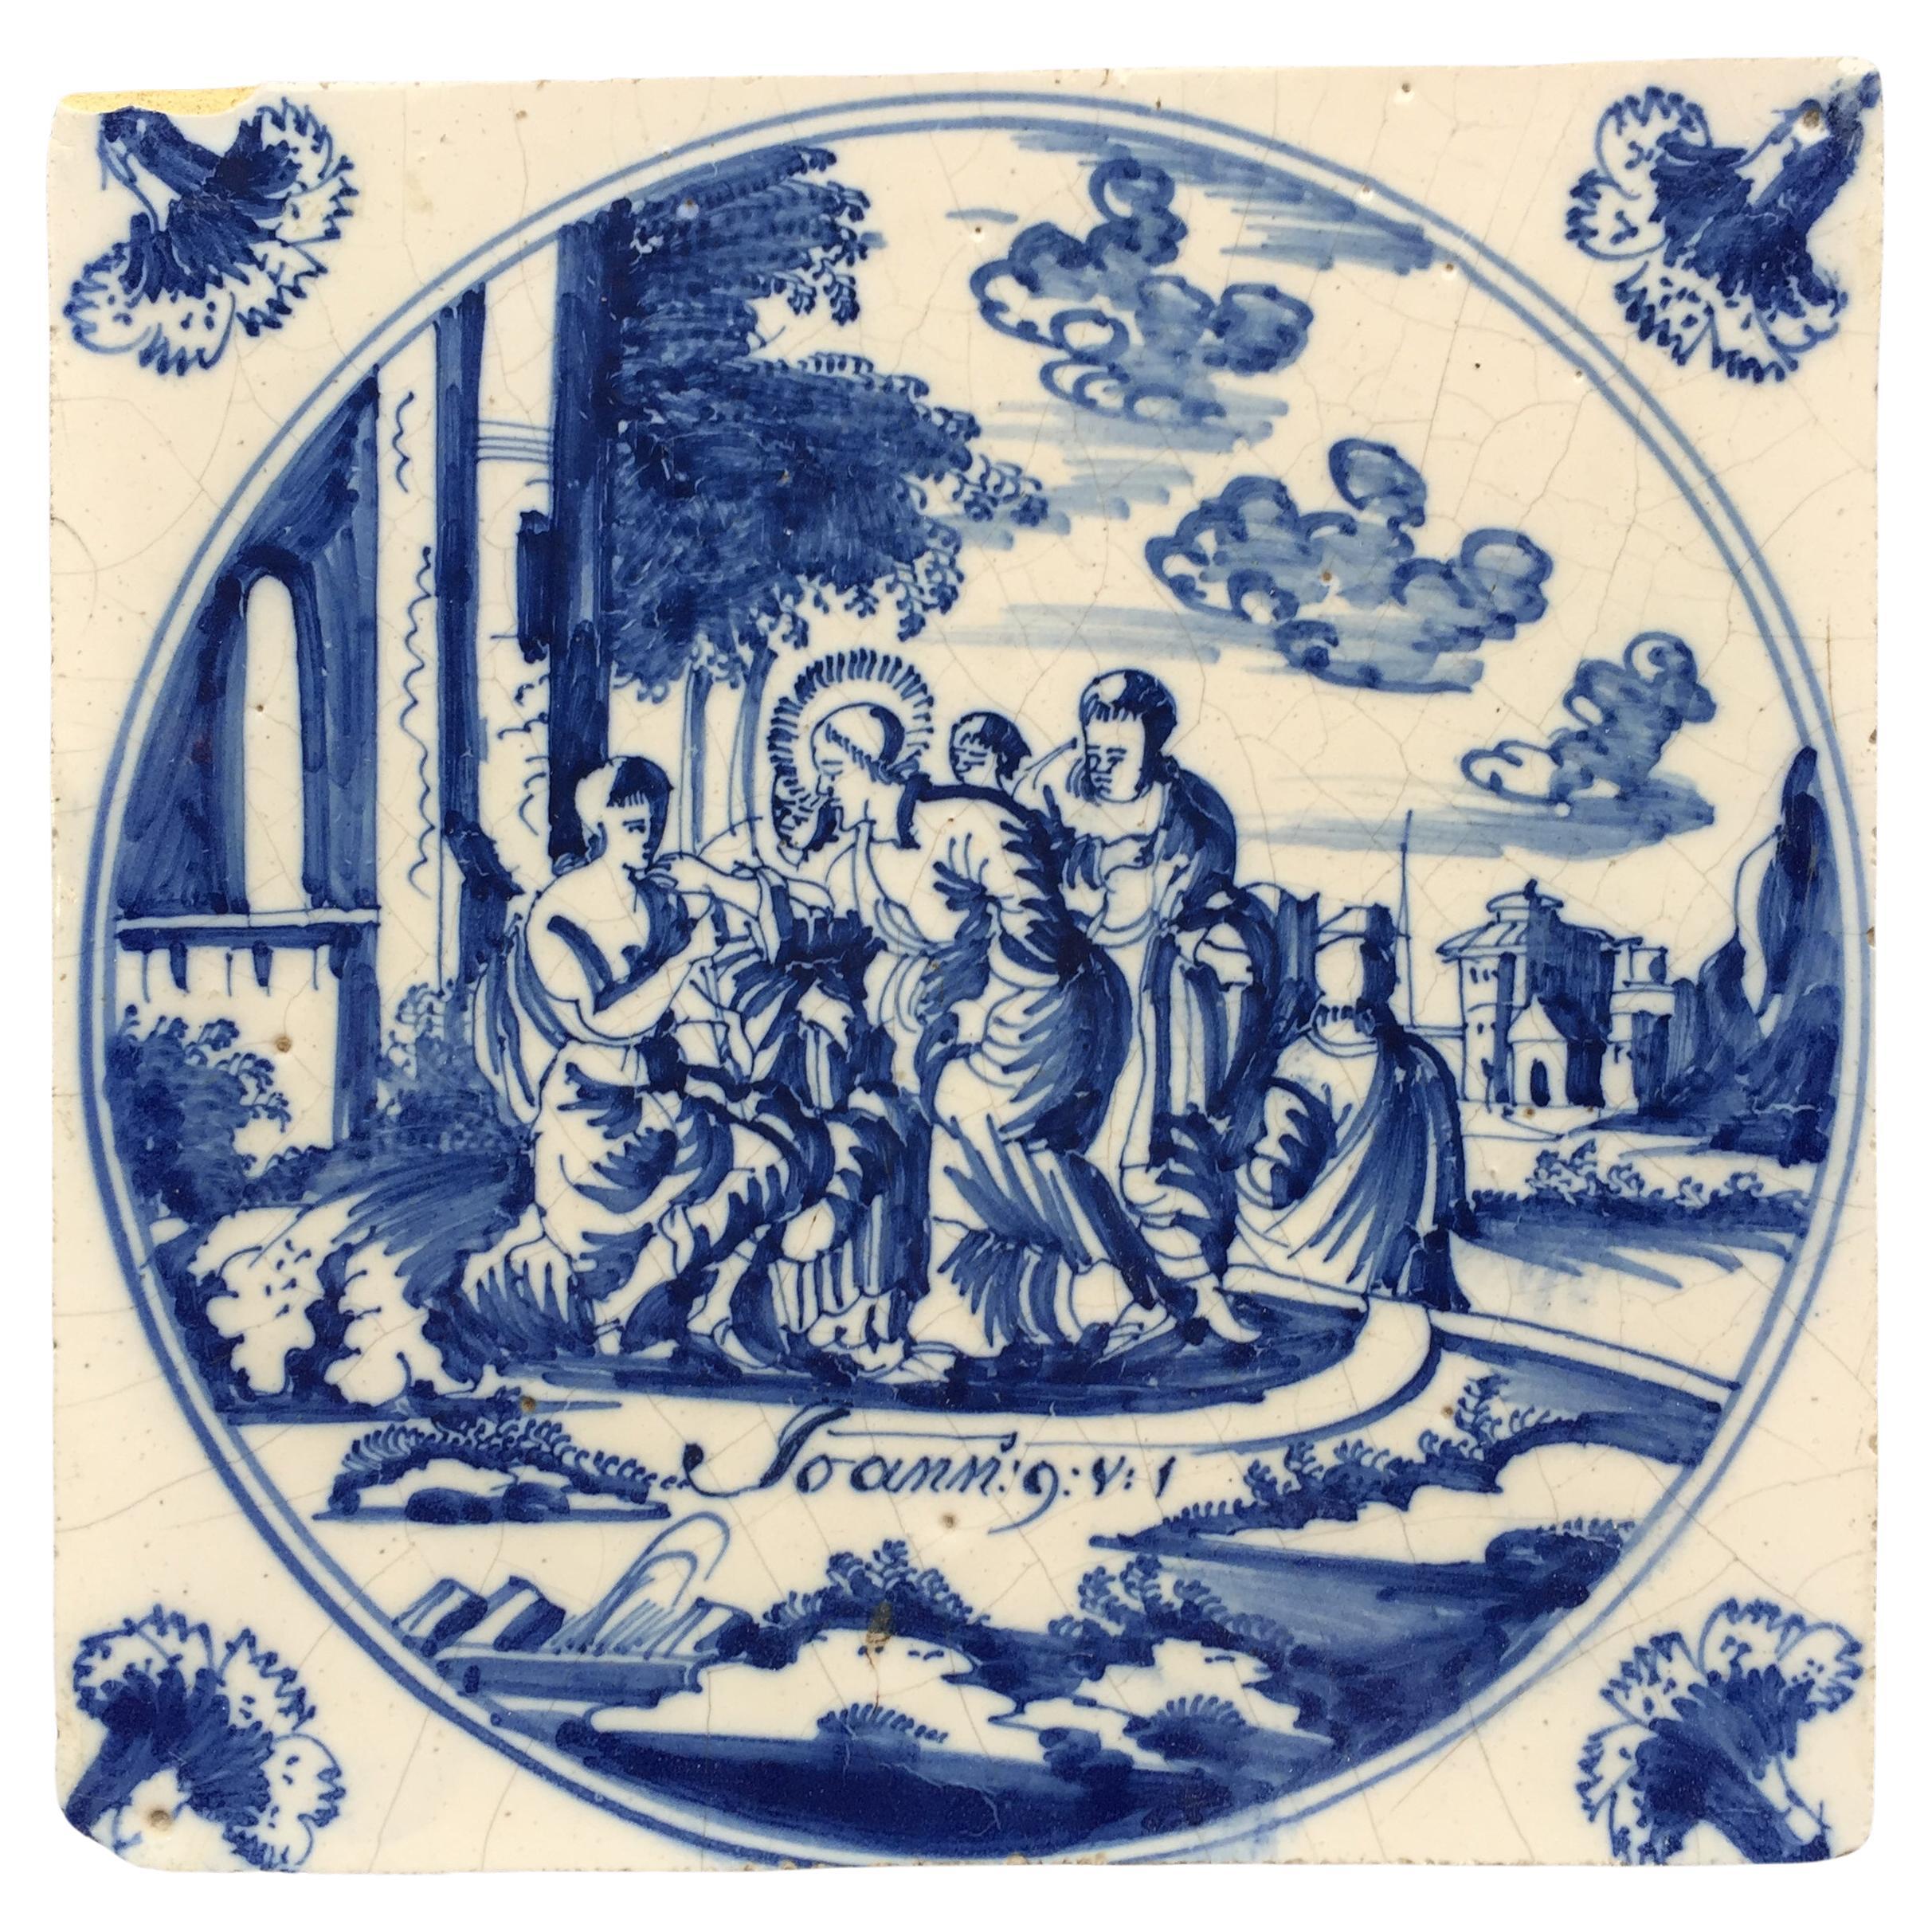 Blau-weiße holländische Delft-Fliese: Johannes 9 v 1, Jesus heilt die Blindheit, 18. Jahrhundert